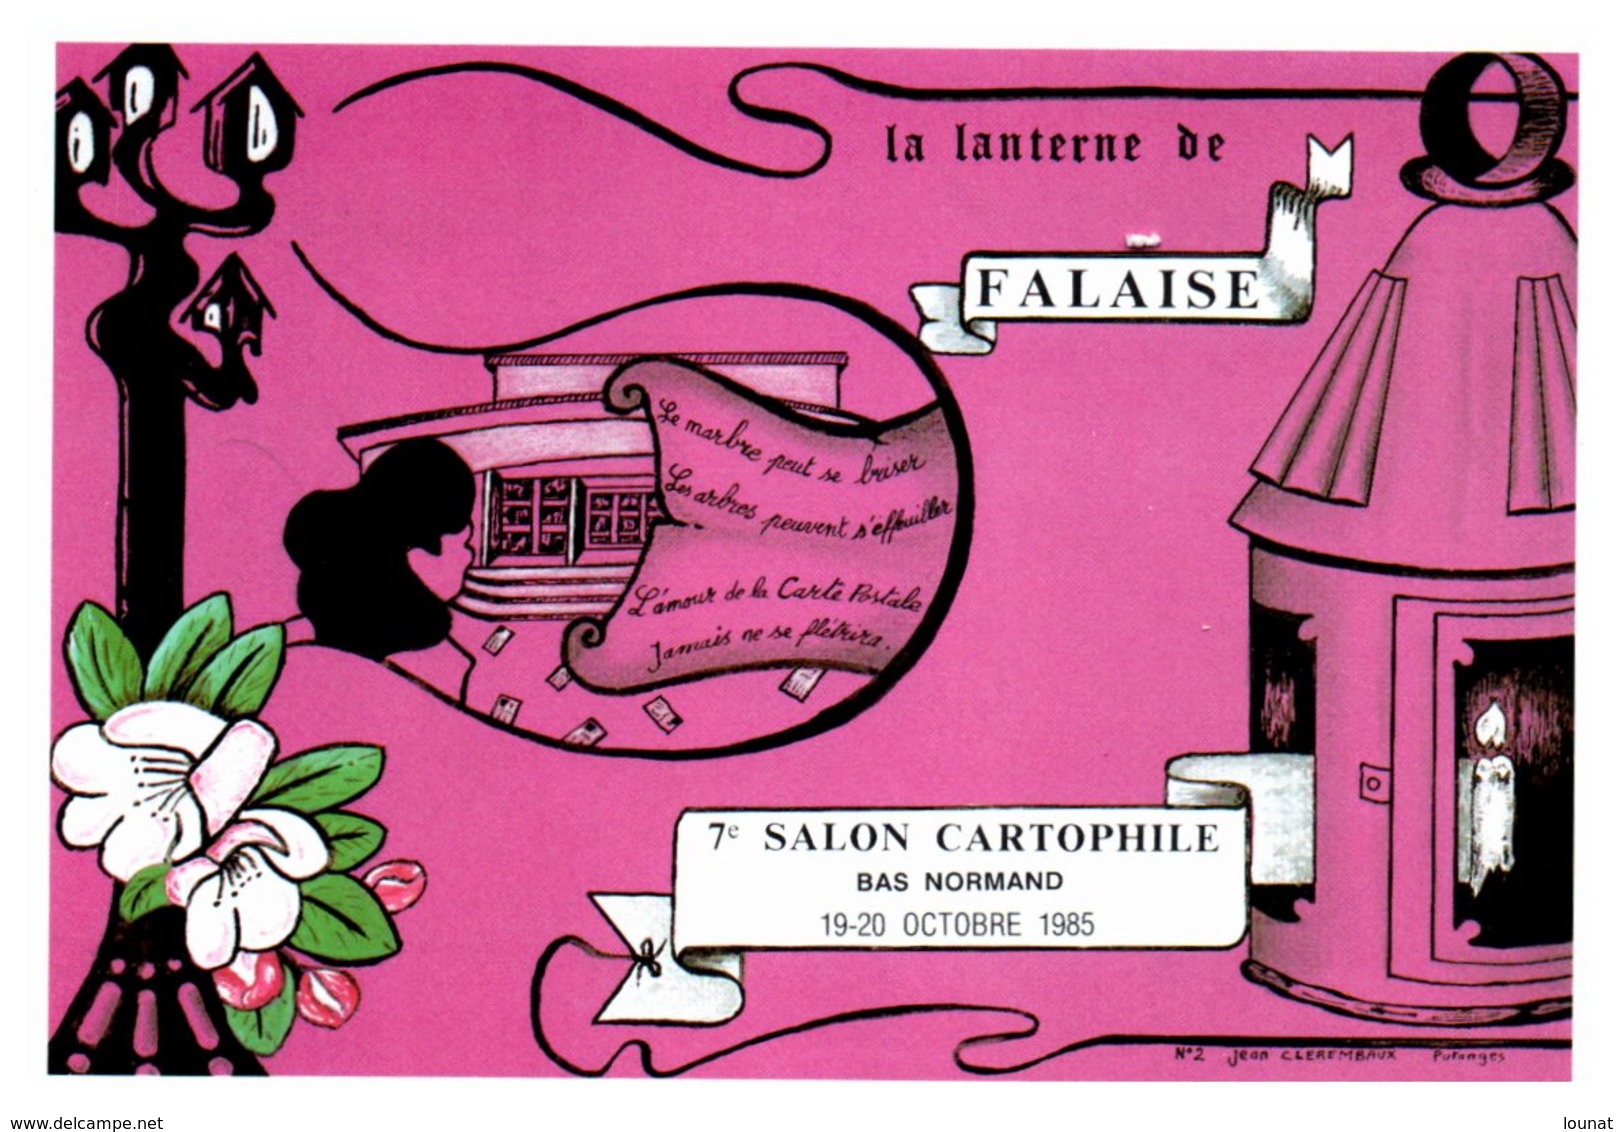 Bourse Et Salon De Collection - FALAISE - La Lanterne De Falaise - 7 ème Salon Cartophile  - Année 1985 - Borse E Saloni Del Collezionismo